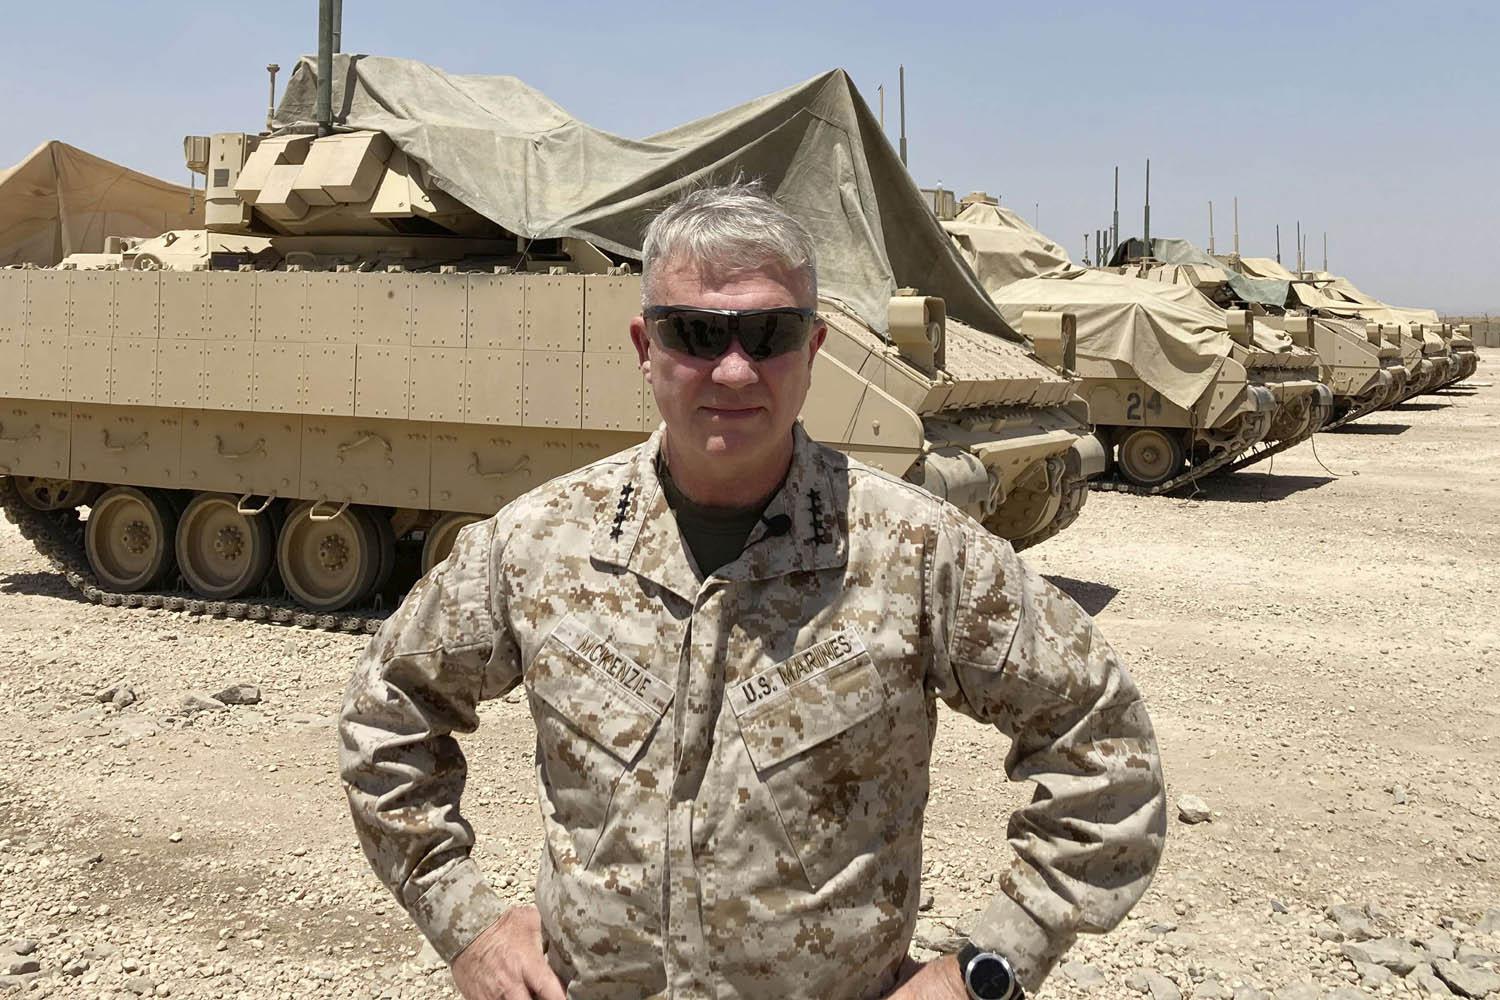 قائد القيادة المركزية الأميركية الجنرال كينيث فرانك ماكينزي مع قوات أميركية في سوريا